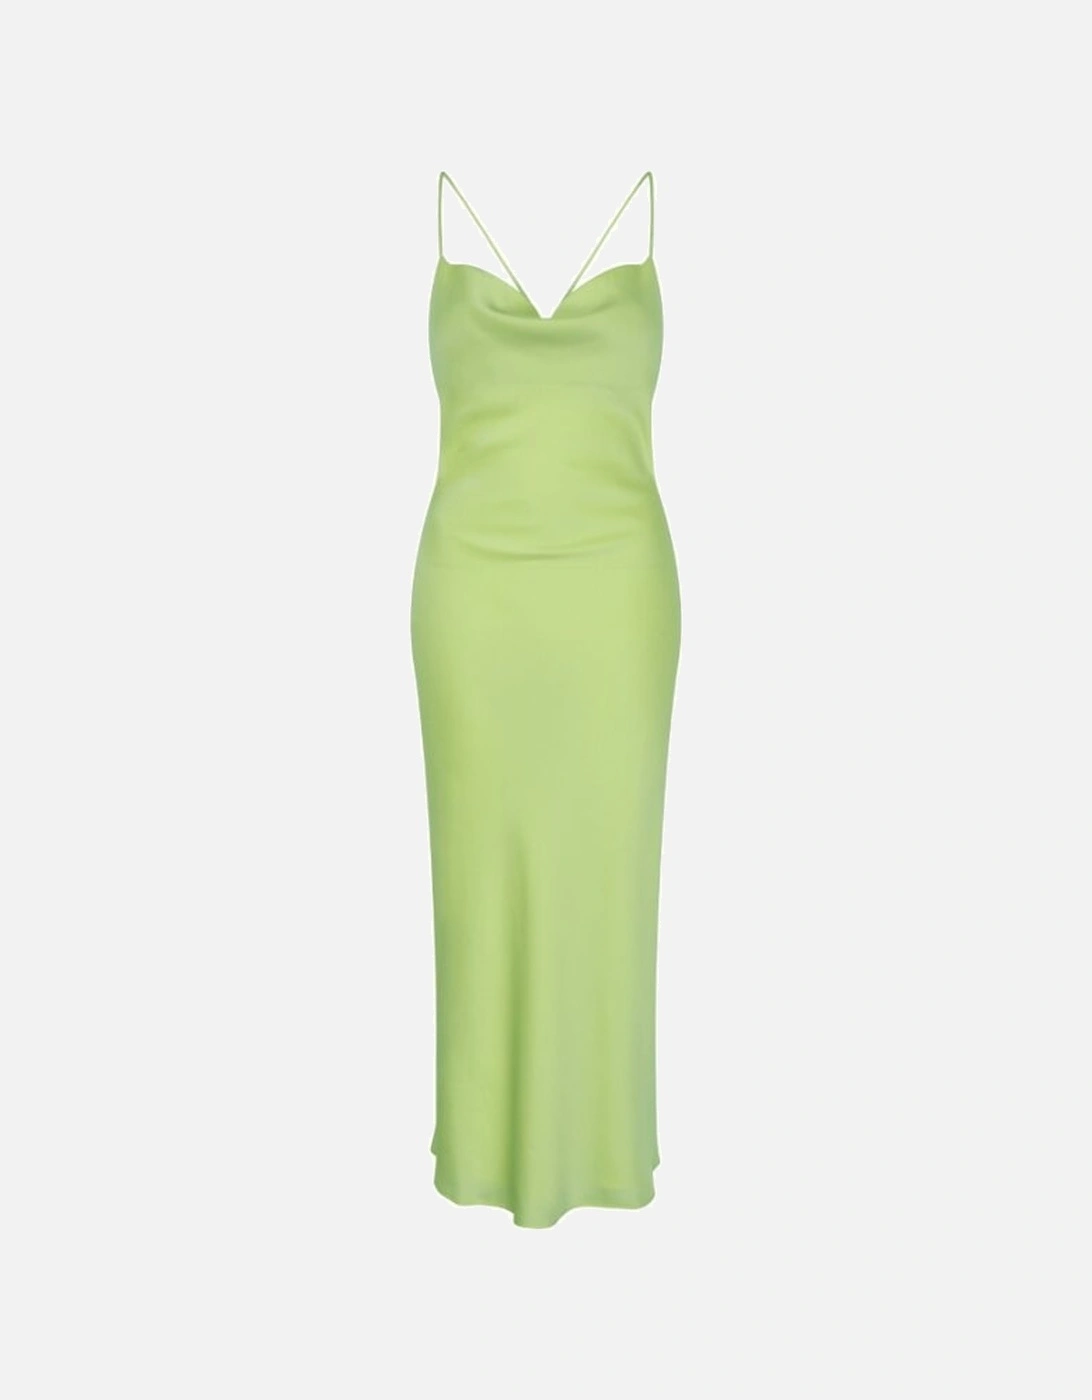 Riviera Midi Dress in Apple Green